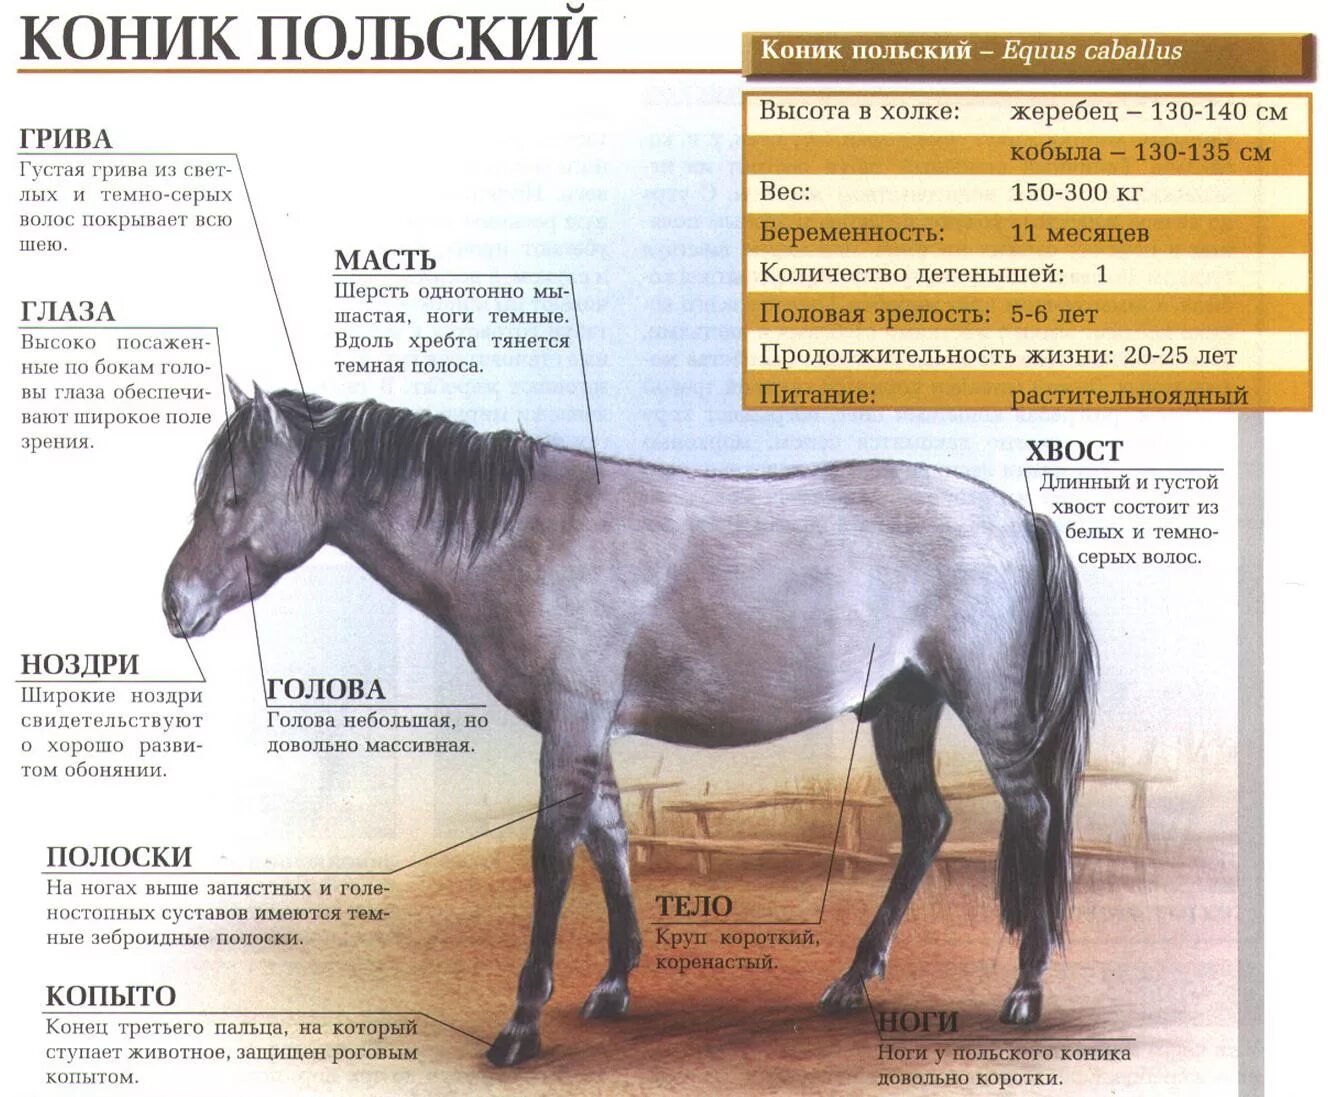 Тарпан польские коники. Польский Коник. Польский Коник лошадь. Конник польский порода лошадей. Сайт коник